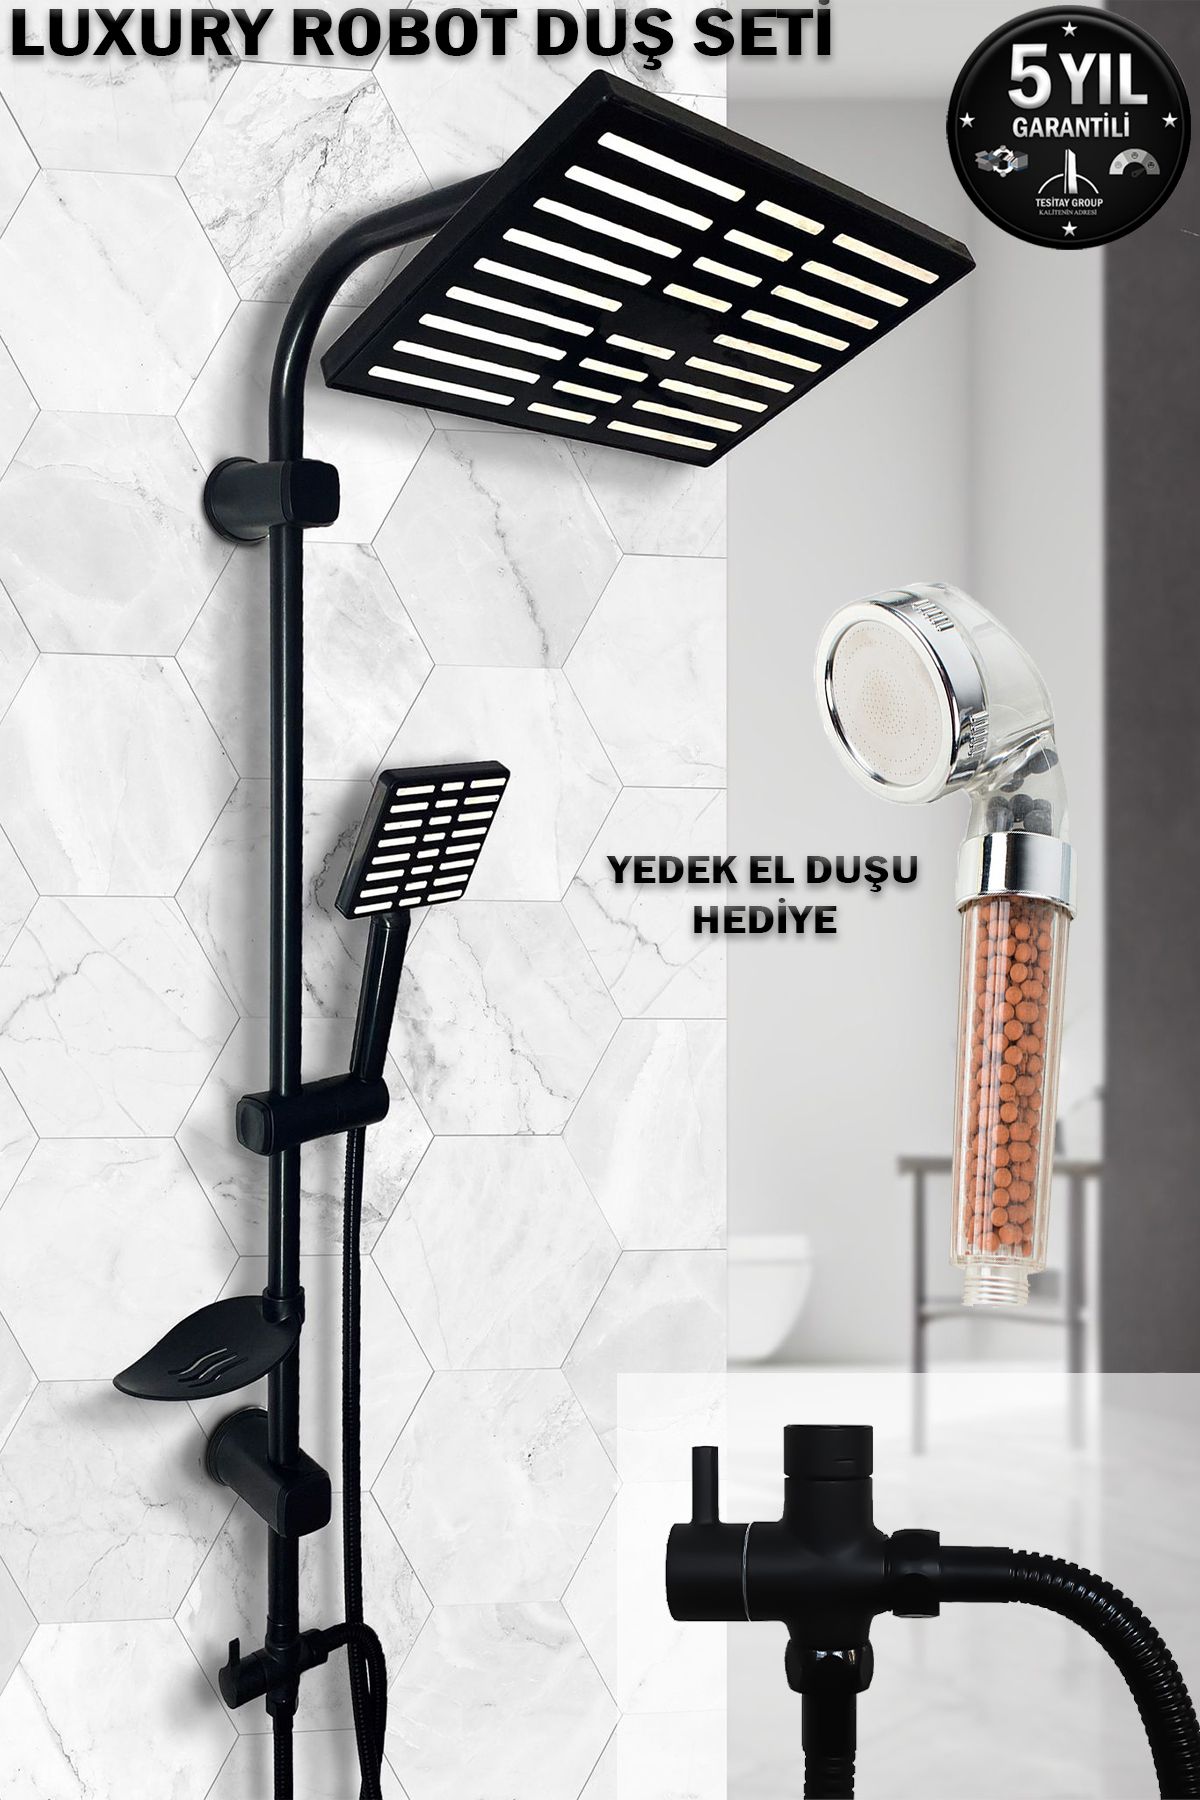 tesitay Siyah Robot Duş Seti El Ve Tepe Duş Başlığı Spiral Takımı Banyo Duşu